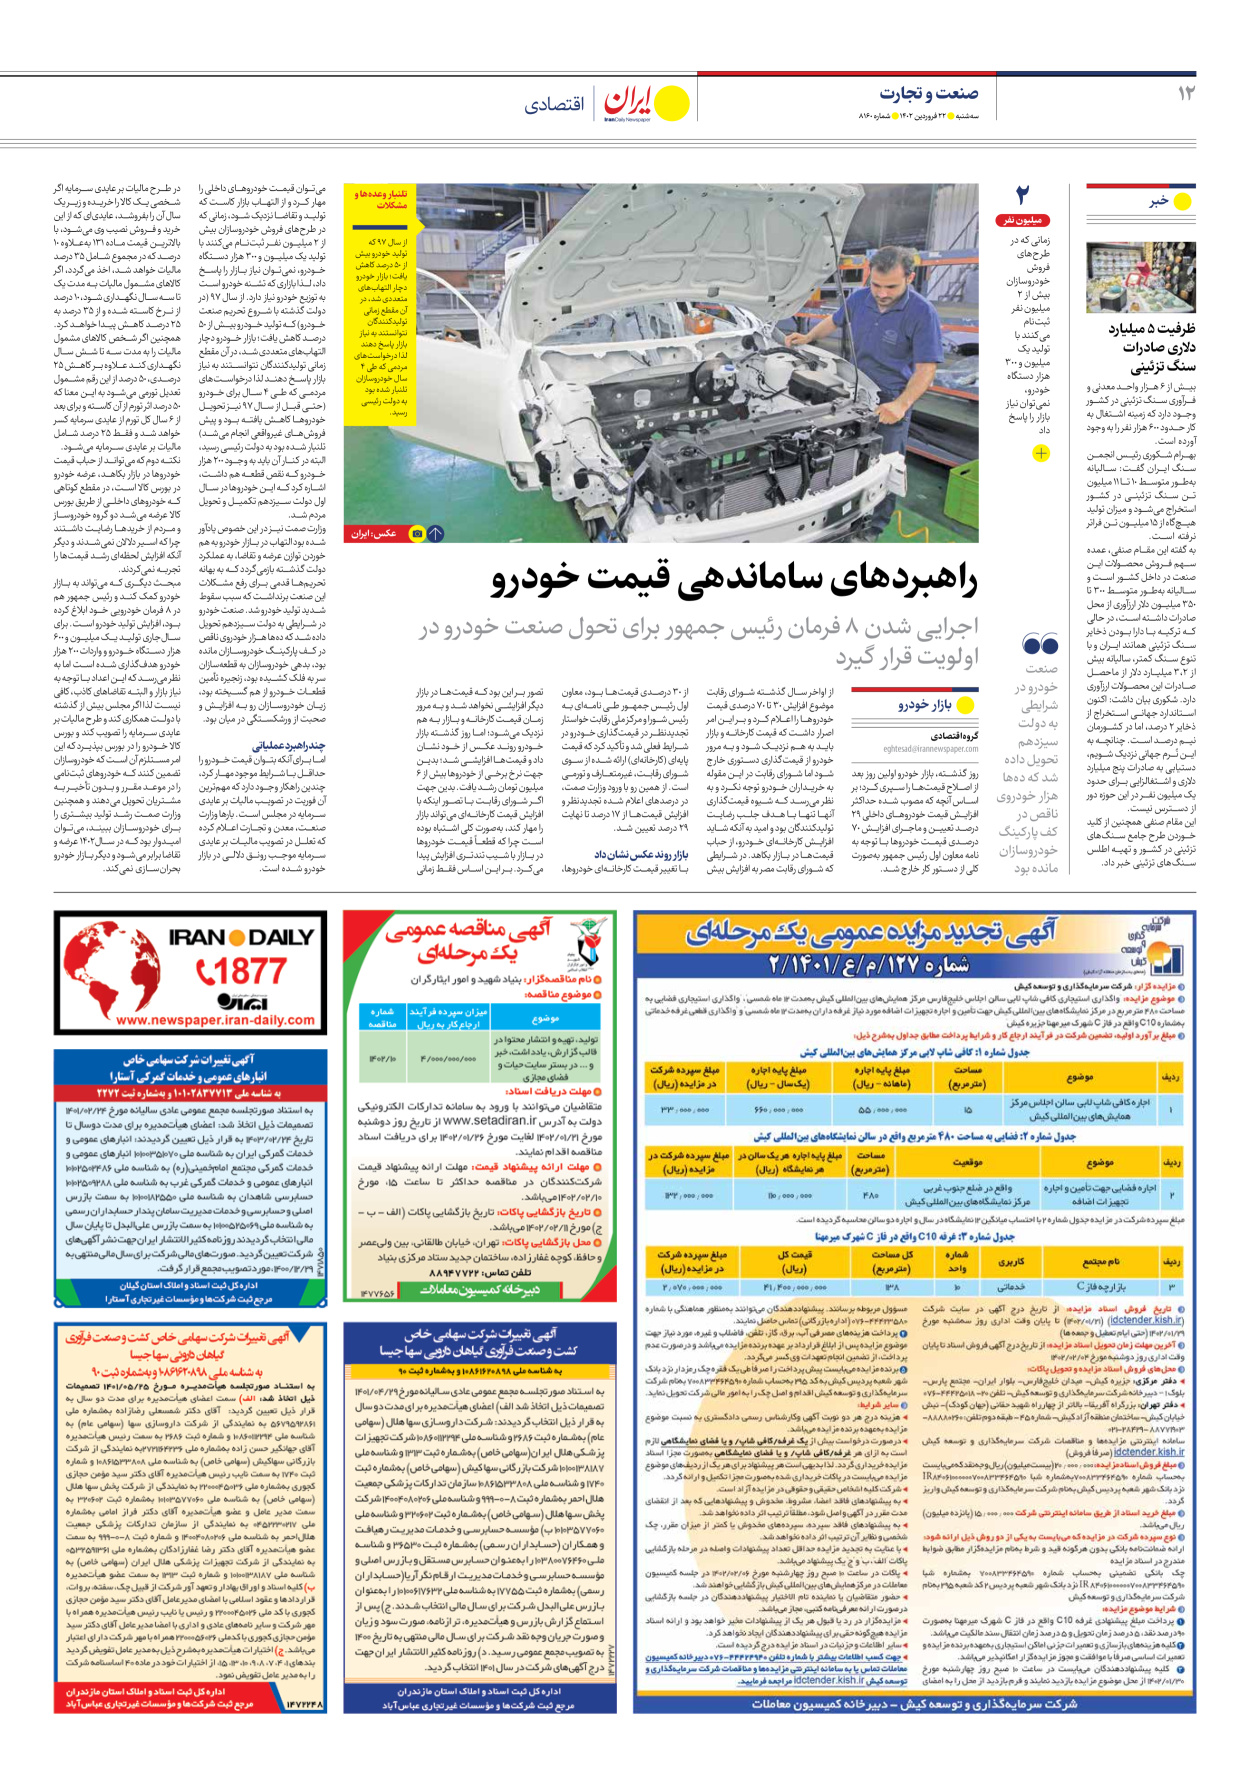 روزنامه ایران - شماره هشت هزار و صد و شصت - ۲۲ فروردین ۱۴۰۲ - صفحه ۱۲